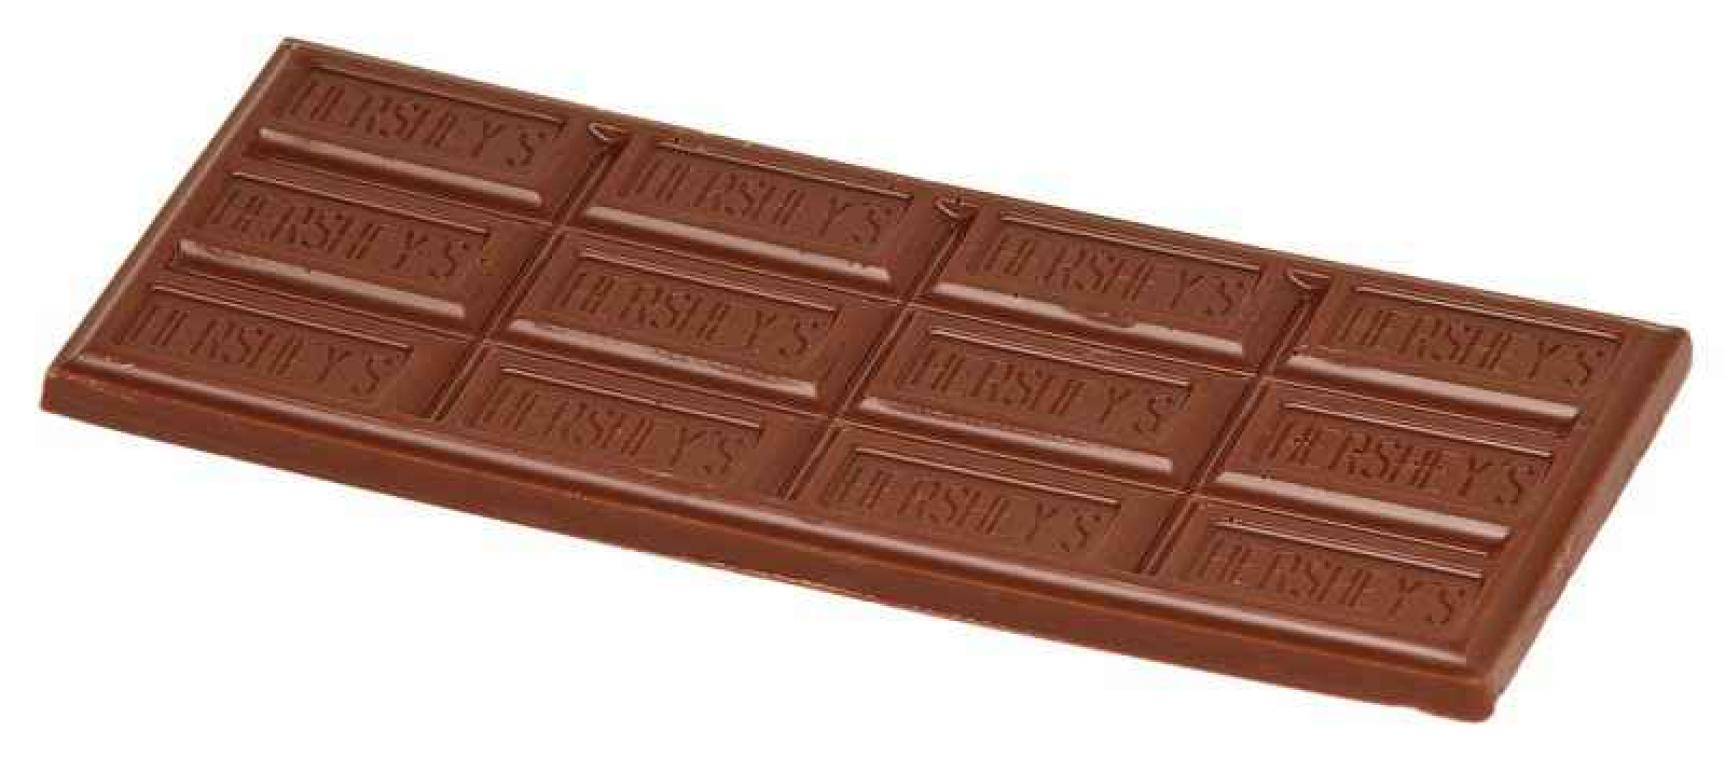 Chocoladerepen verminderen de kans op hartfalen